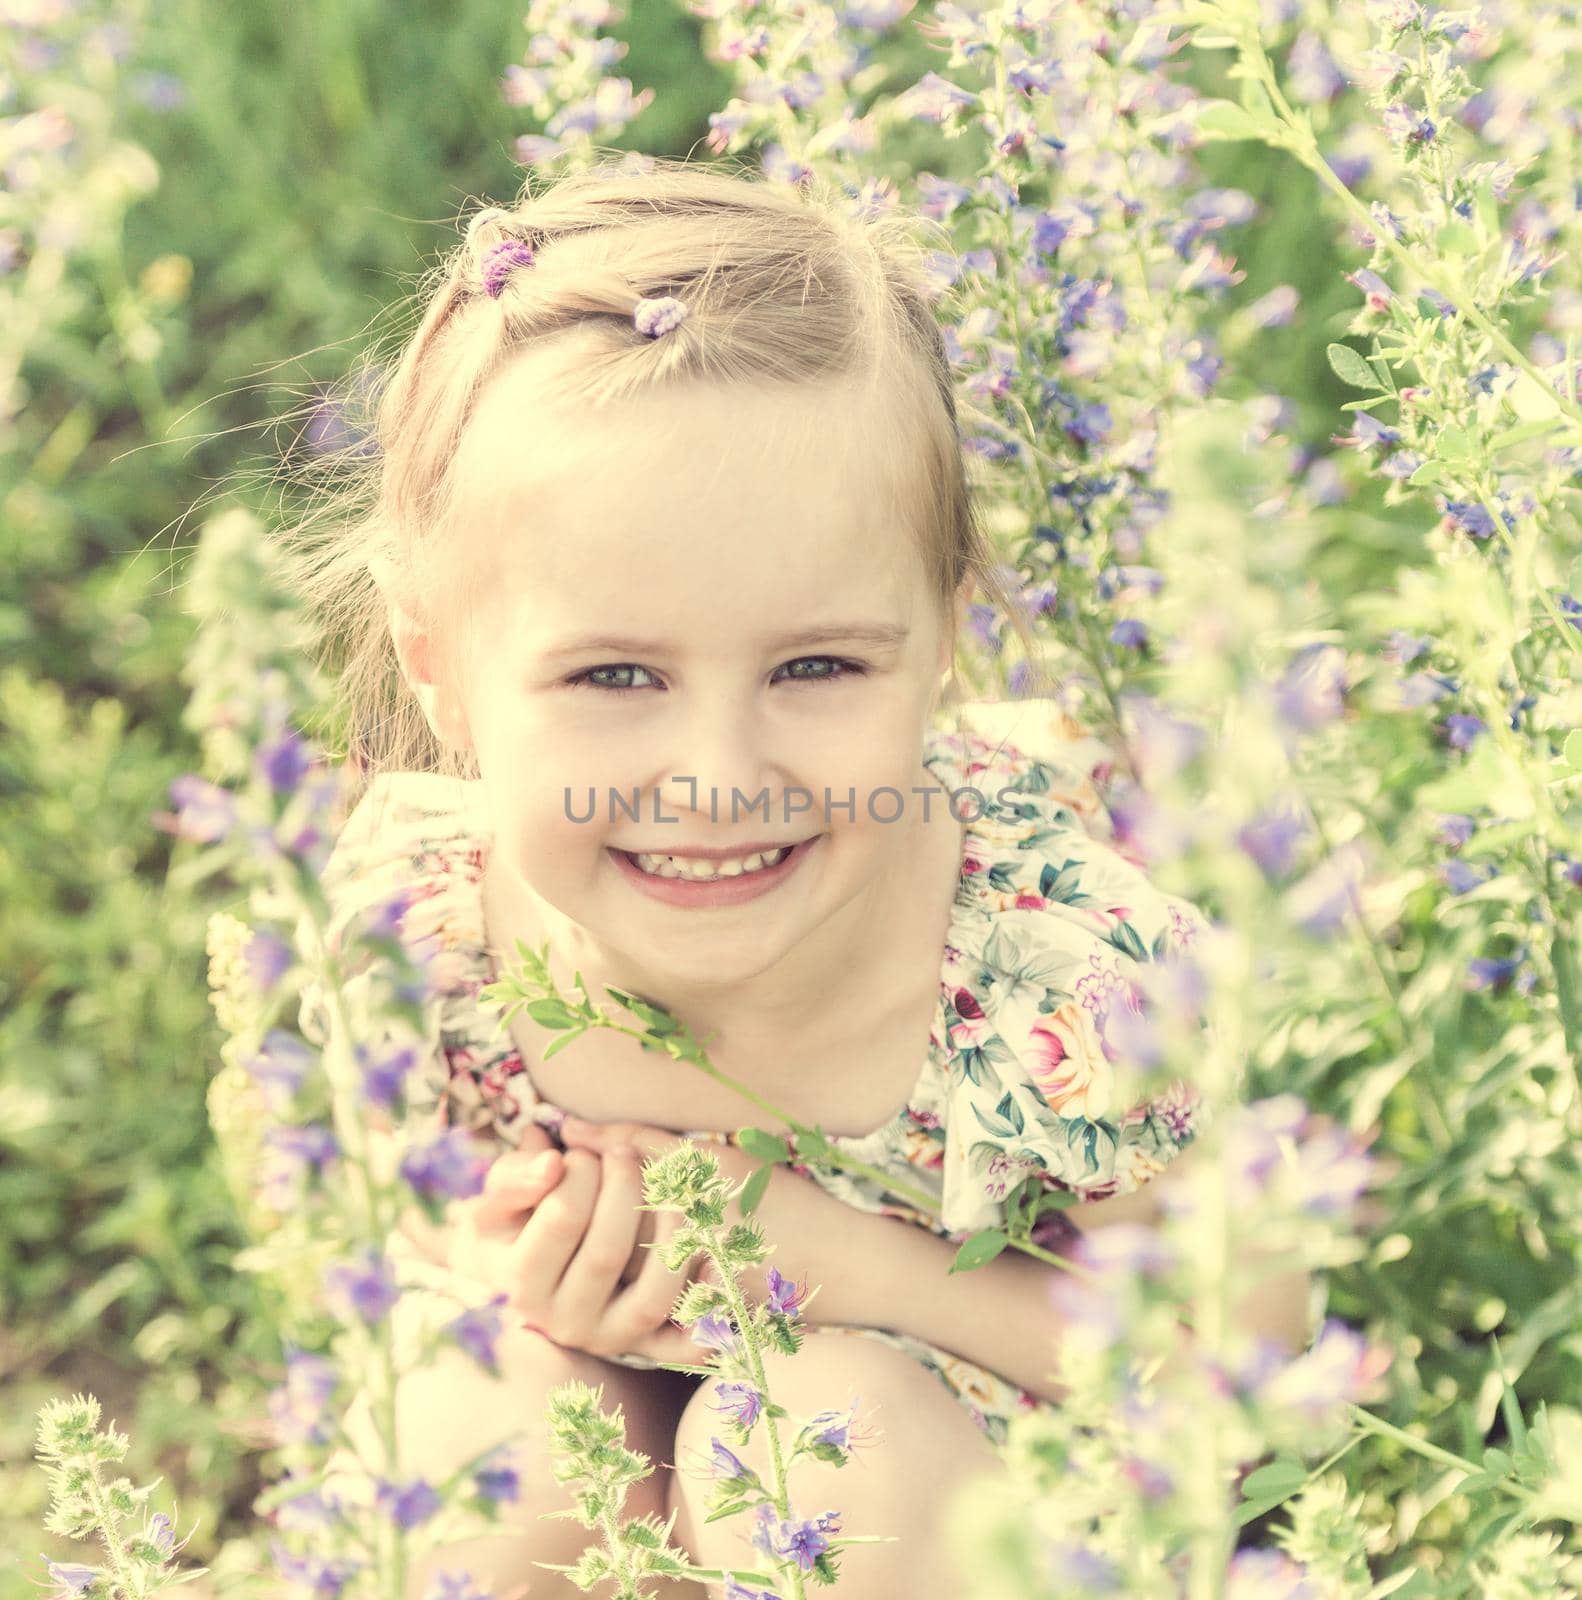 girl sitting in field full of small flowers by tan4ikk1